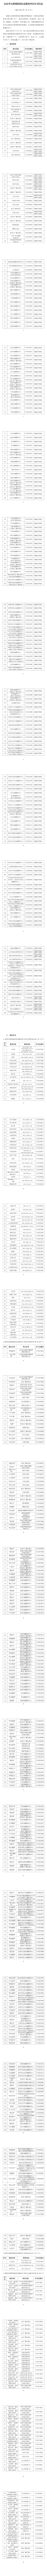 山东省互联网新闻信息服务单位许可信息